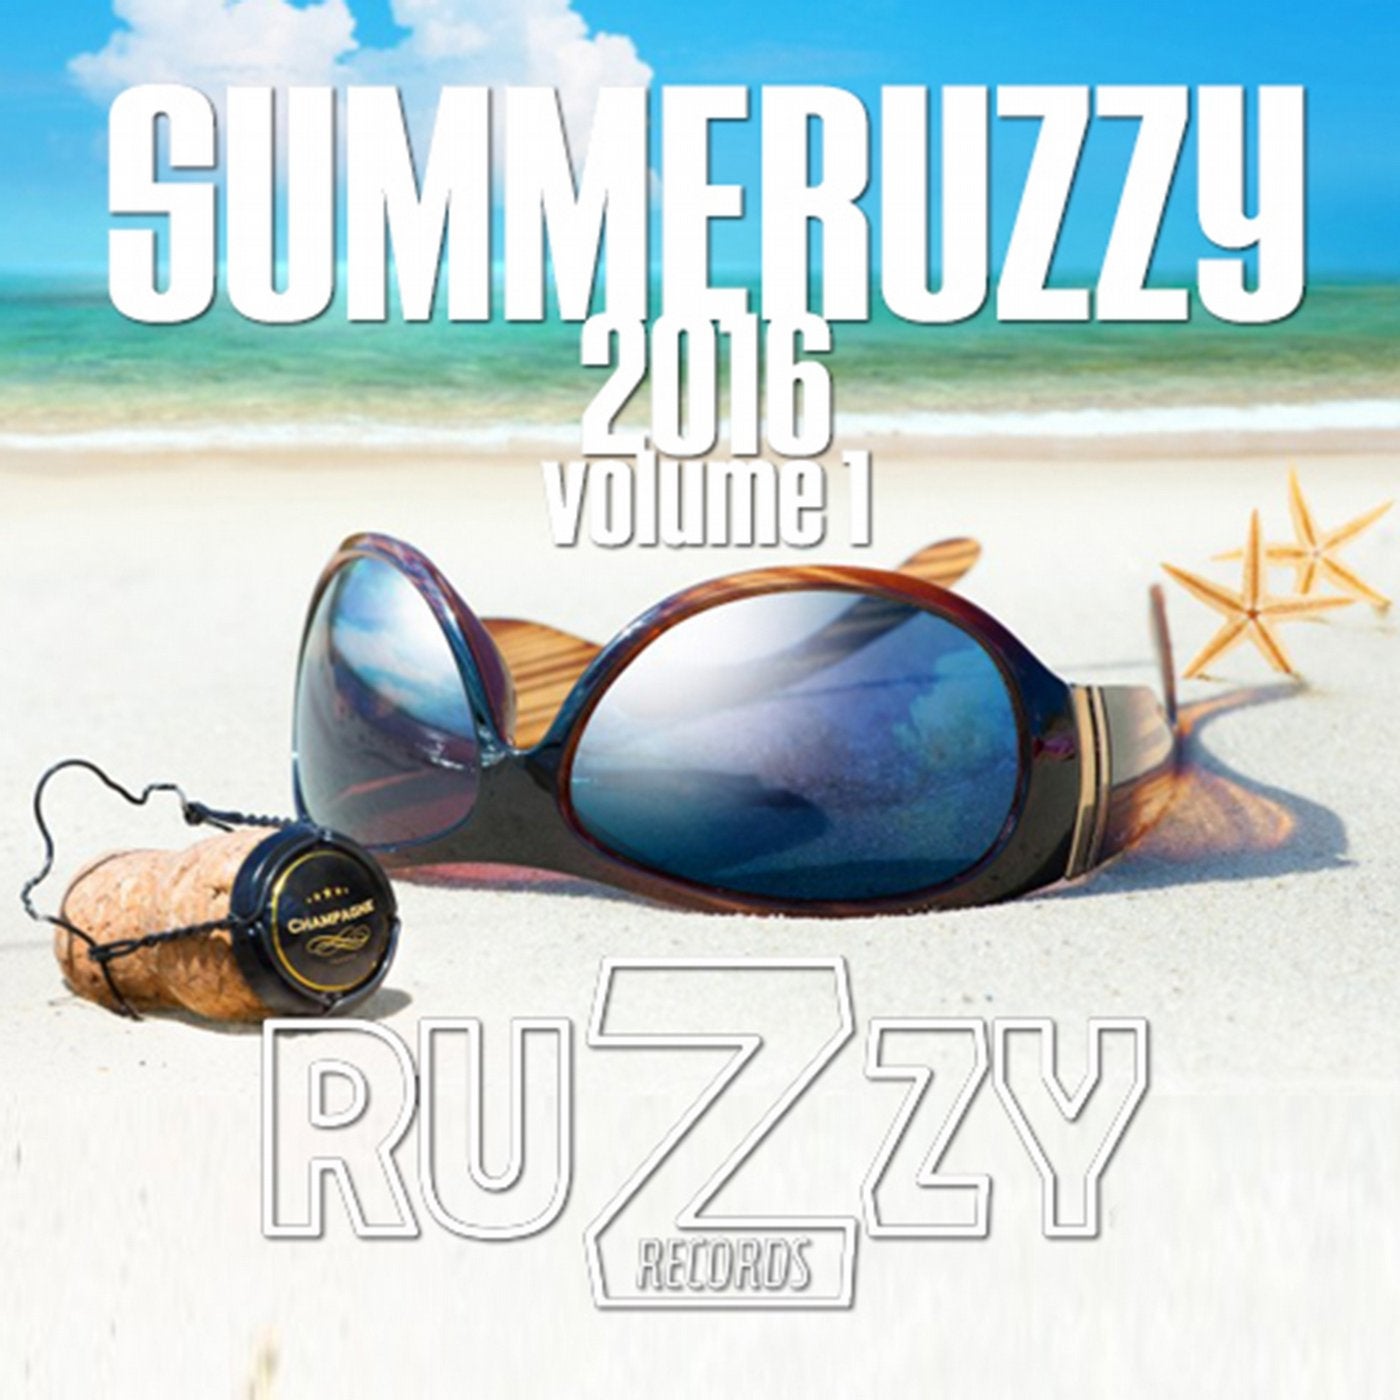 Summeruzzy 2016, Vol. 1